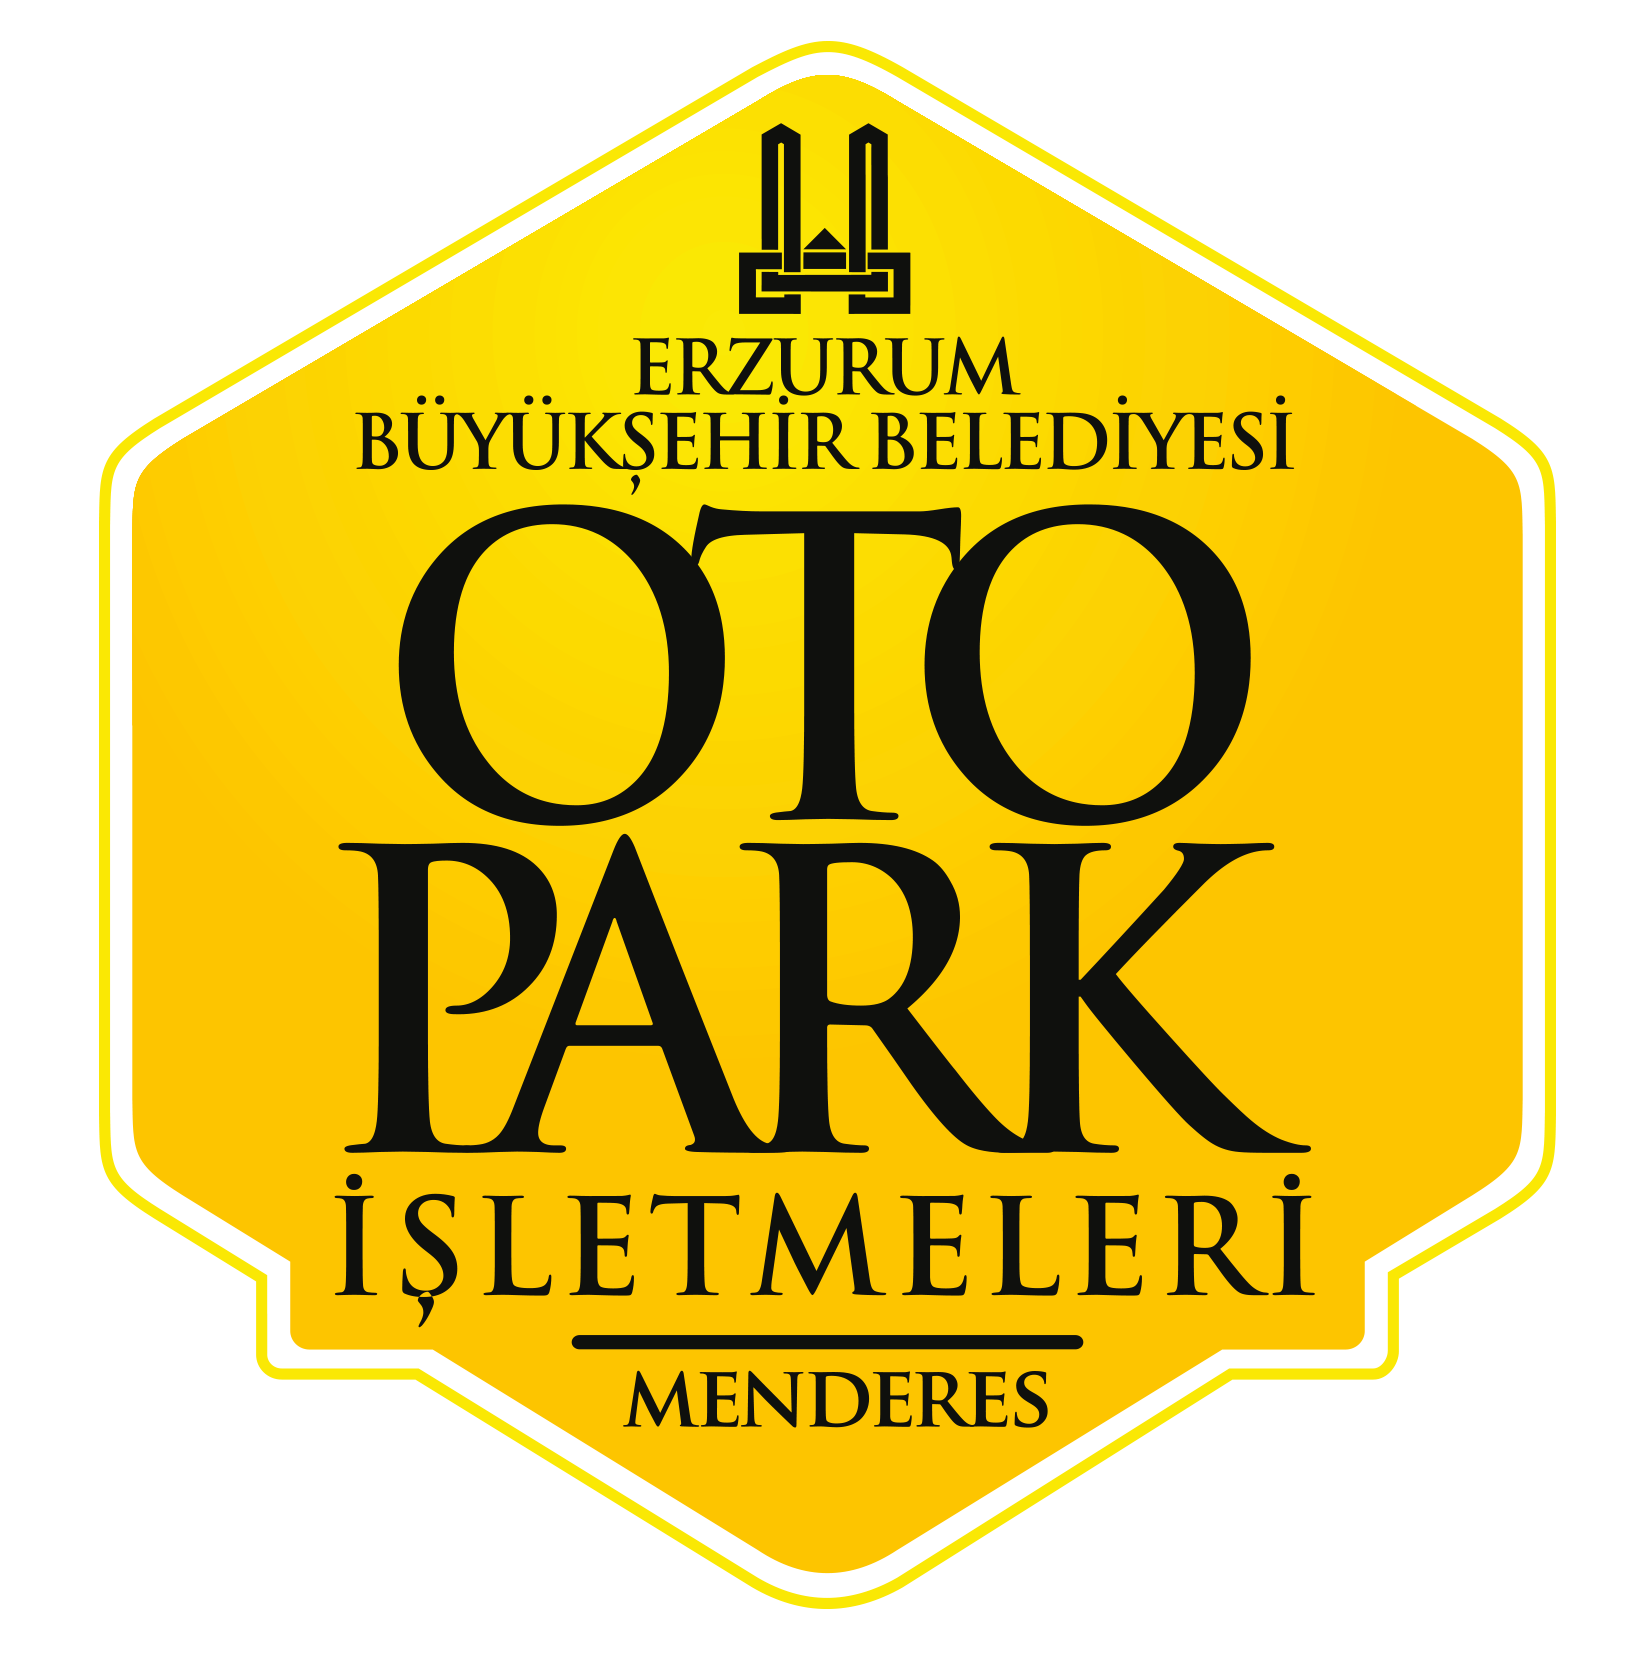 Erzurum Büyükşehir Belediyesi Otopark İşletmeleri - Menderes